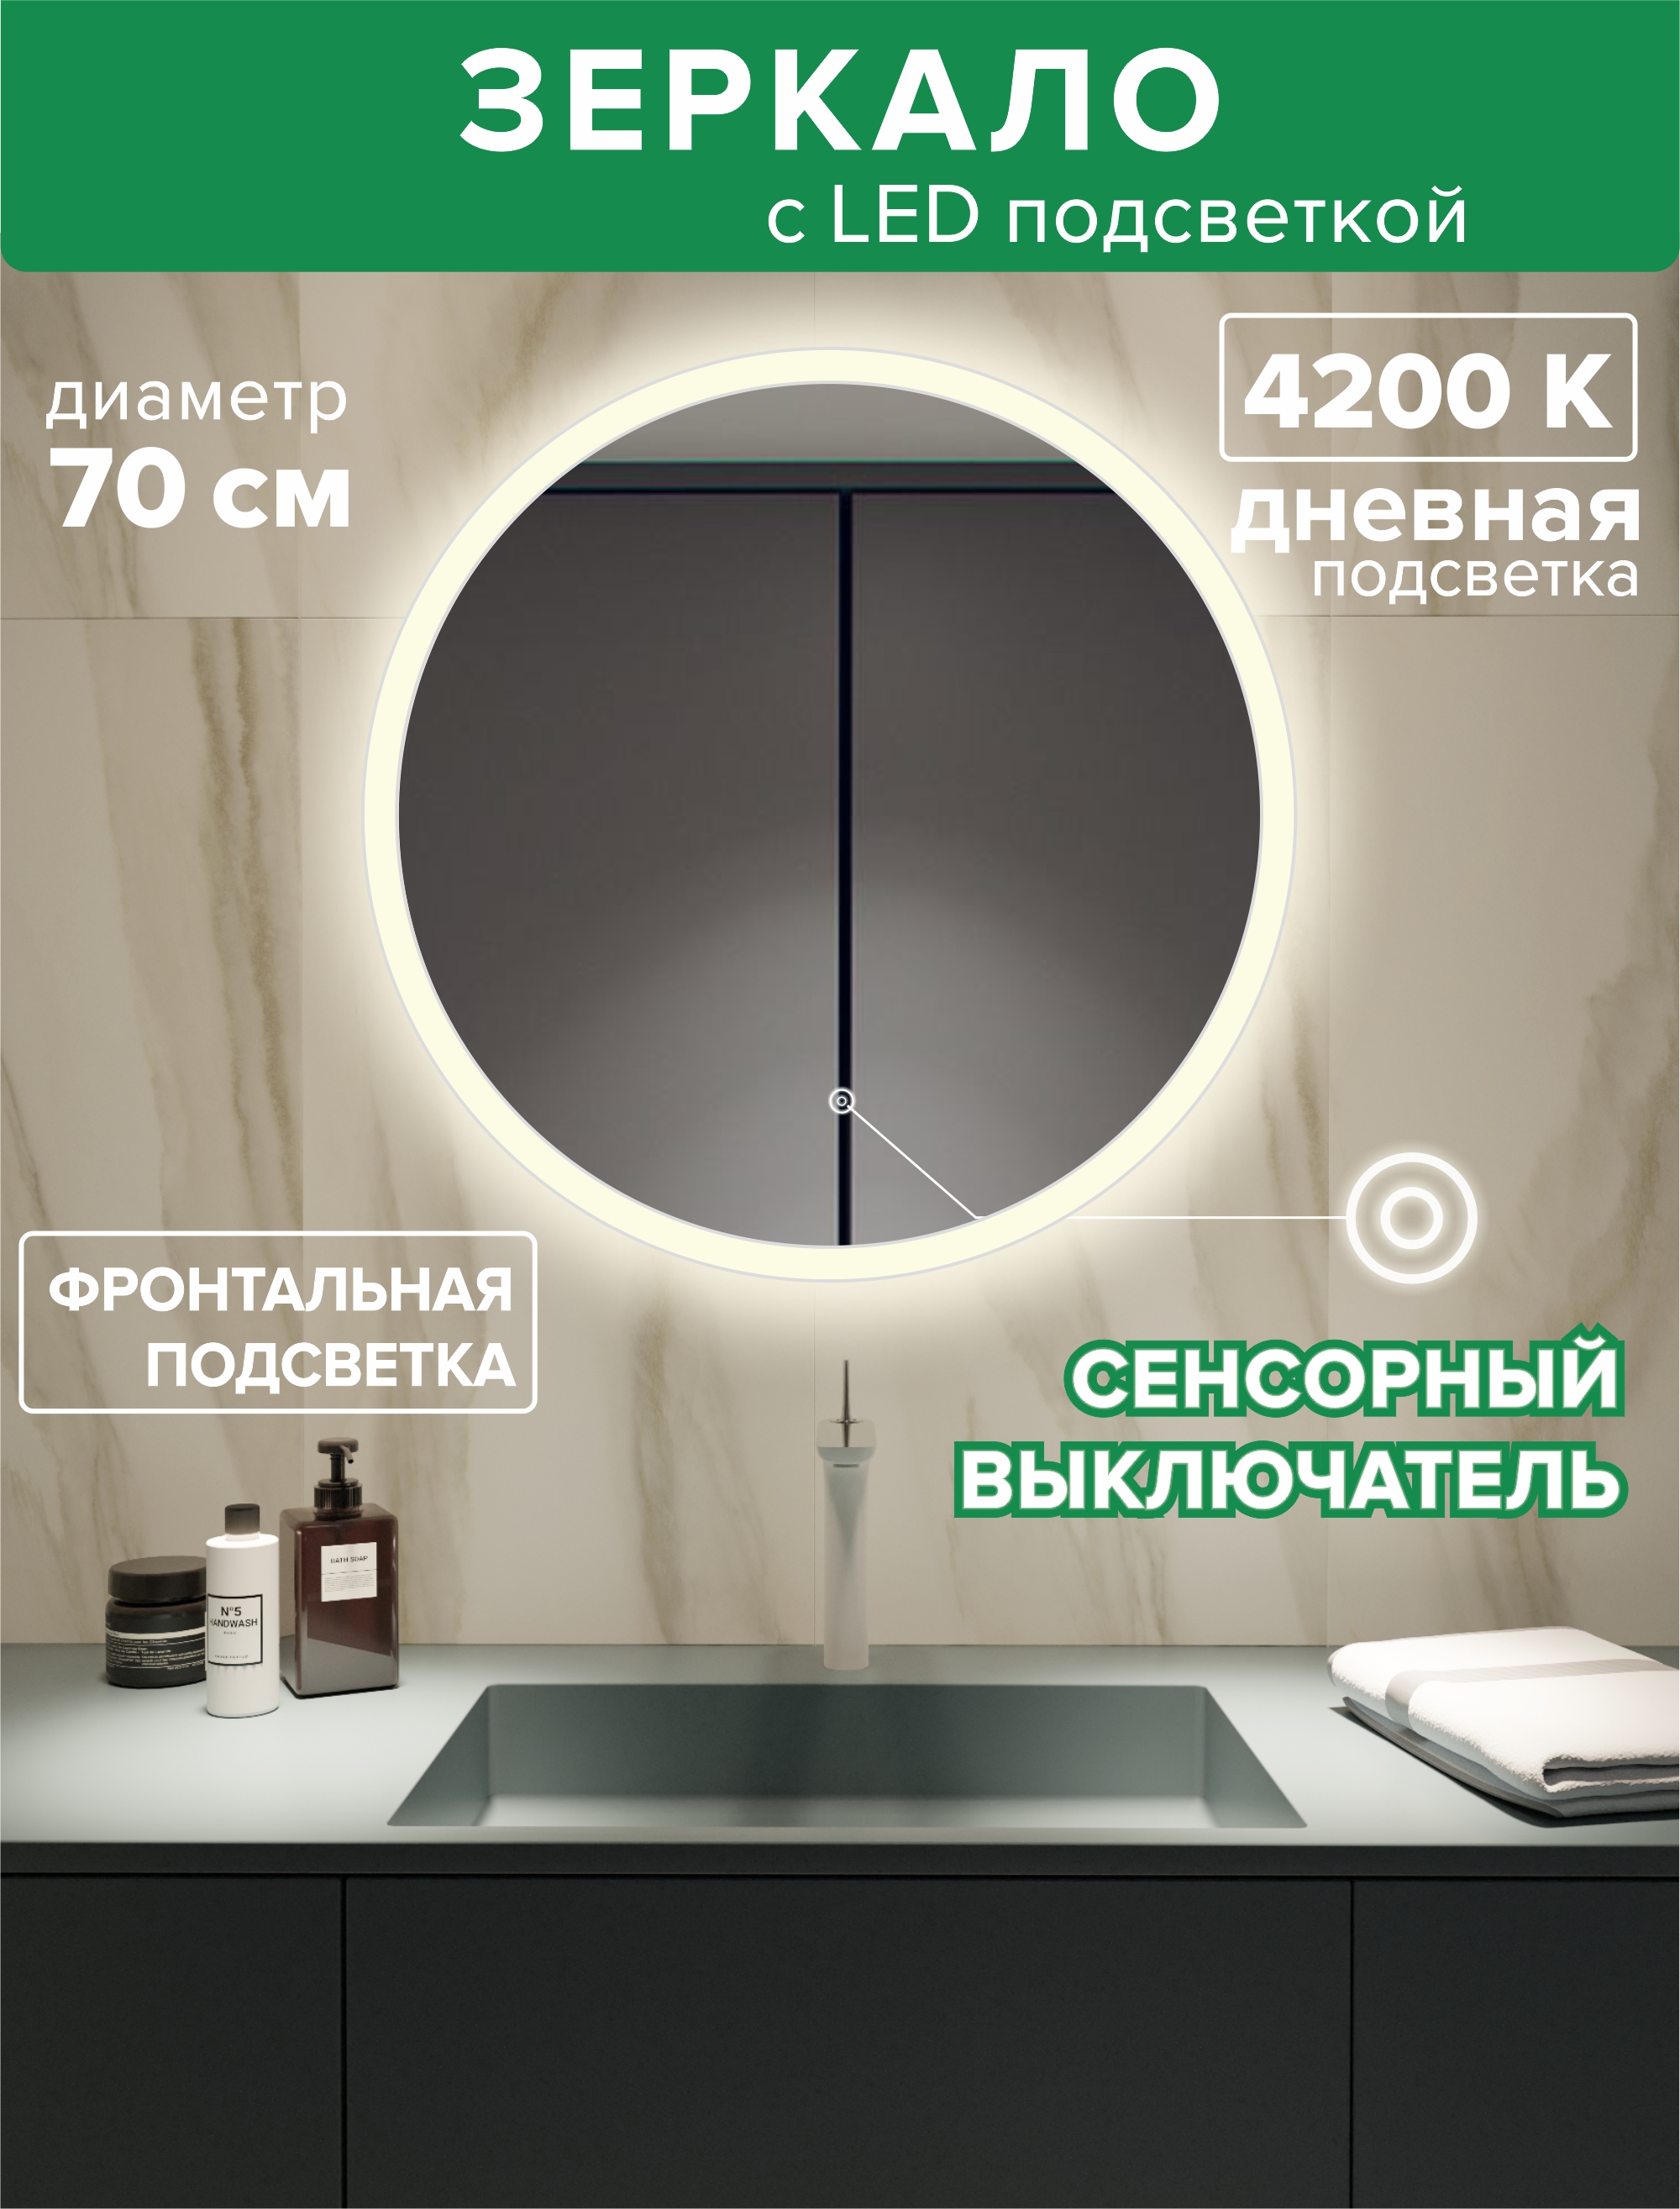 Зеркало для ванной Alfa Mirrors фронтальная дневная подсветка 4200К, круг 70 см, MSvet-7d